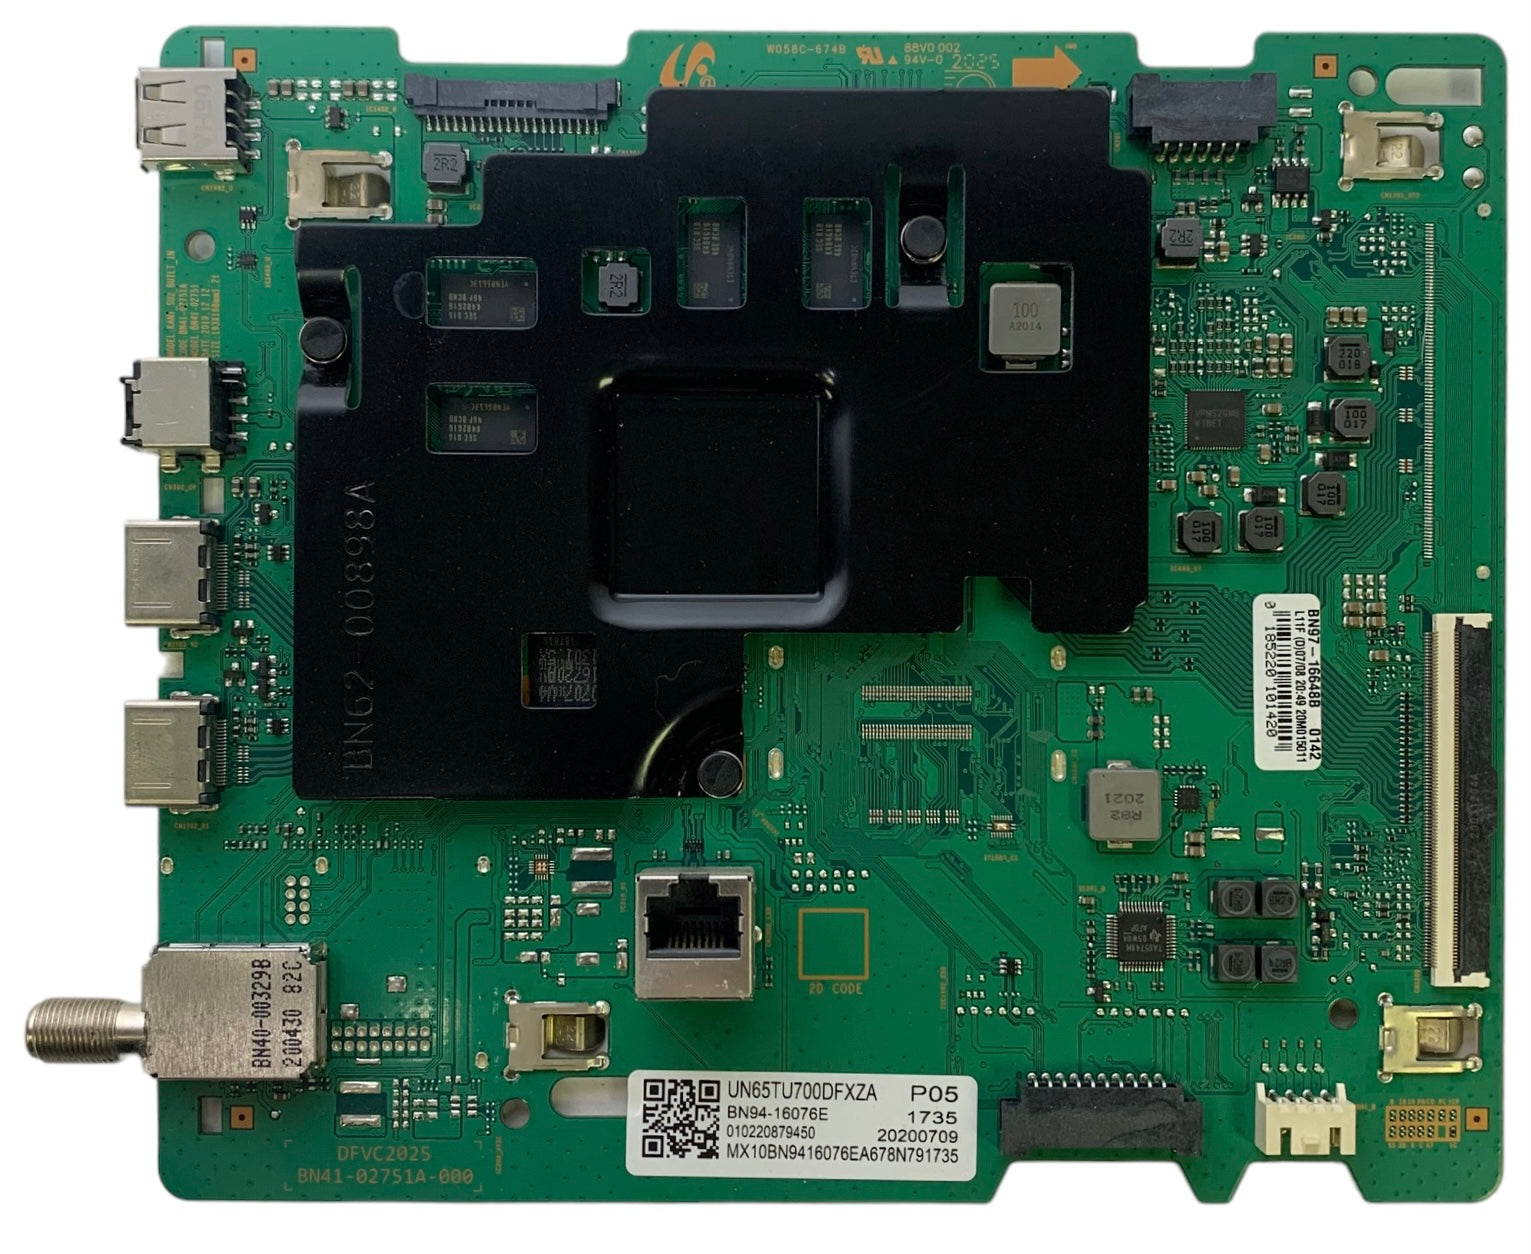 Samsung BN94-16076E Main Board for UN65TU700DFXZA UN65TU7000FXZA (Version CC02)